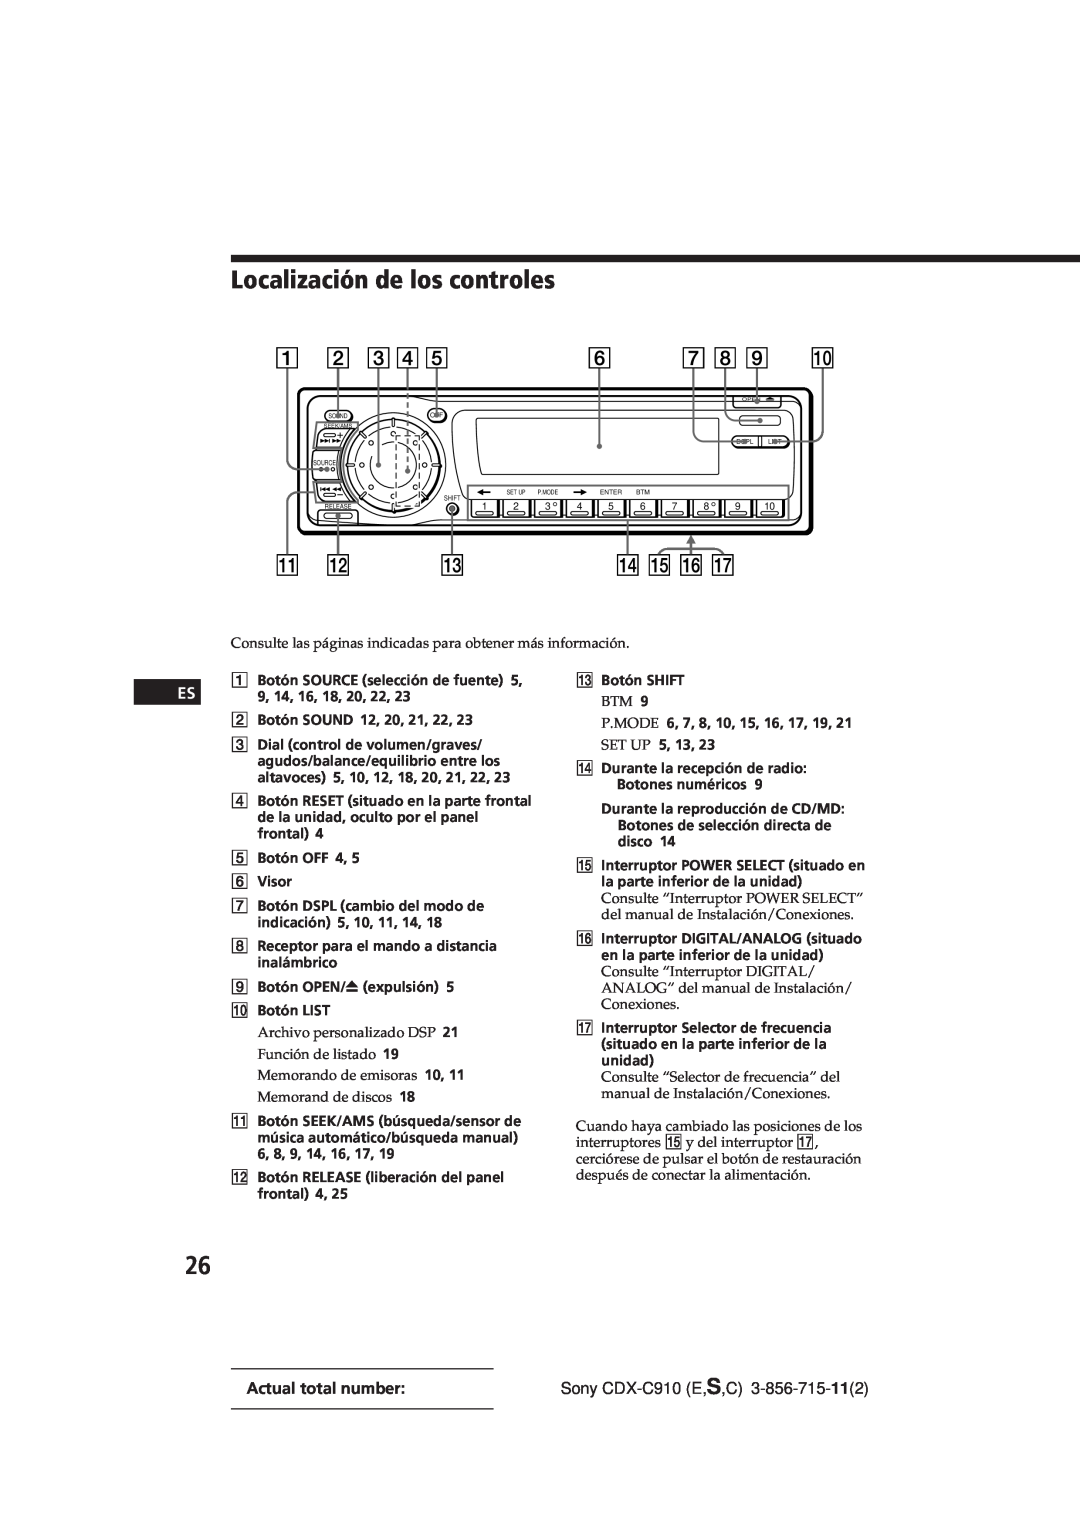 Sony CDX-C910 manual Localización de los controles, Archivo personalizado DSP, Función de listado, Memorando de emisoras 